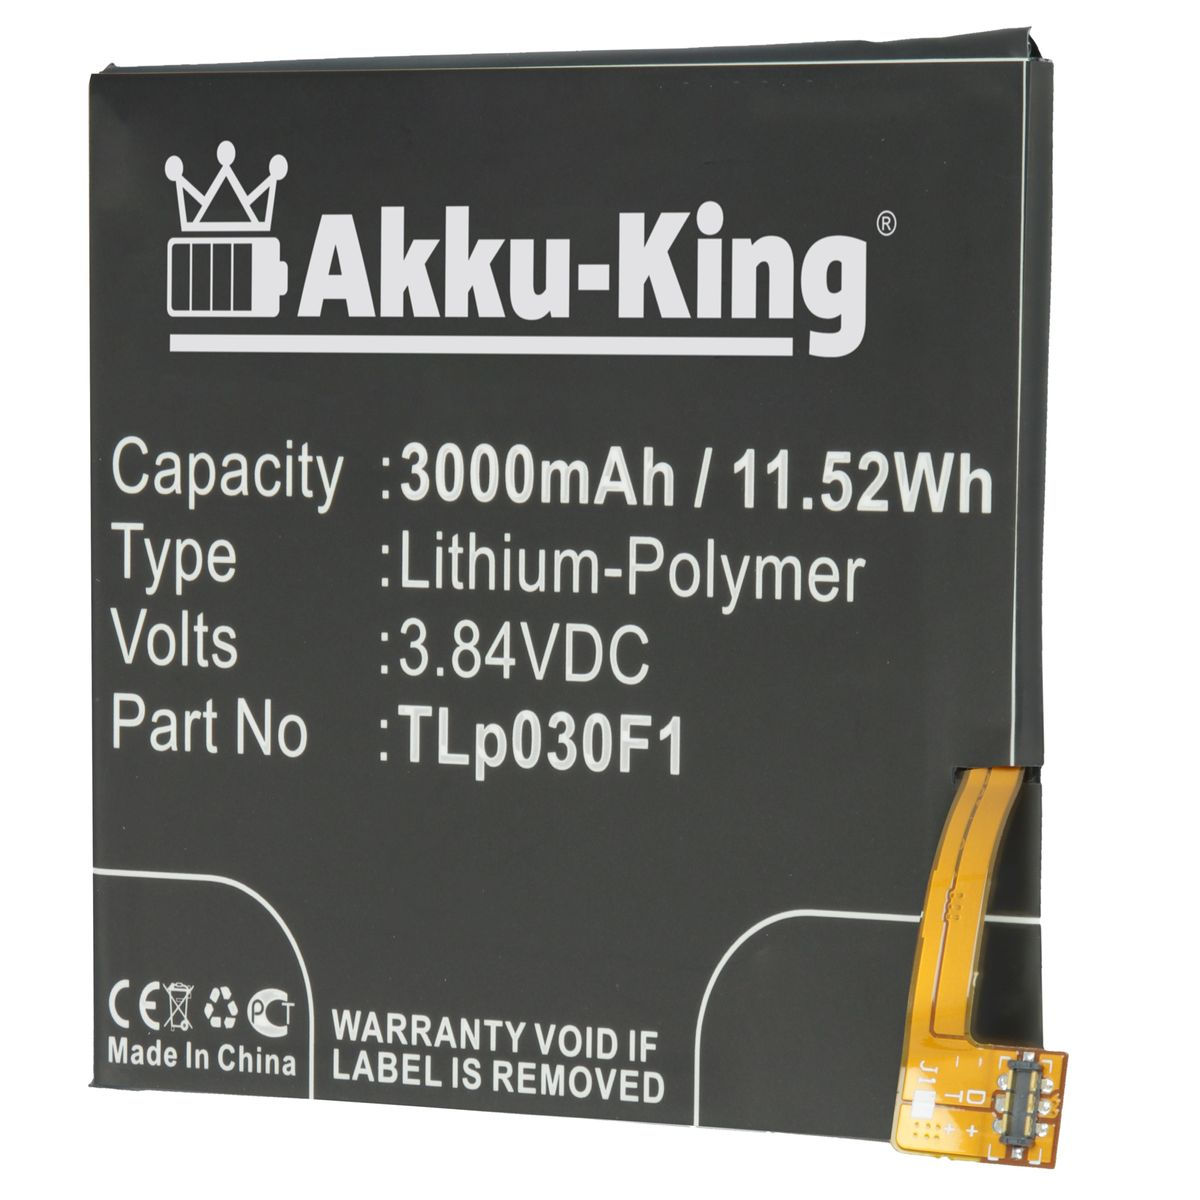 AKKU-KING Akku Alcatel Tlp030F1 für 3.84 Volt, 3000mAh Handy-Akku, Li-Polymer